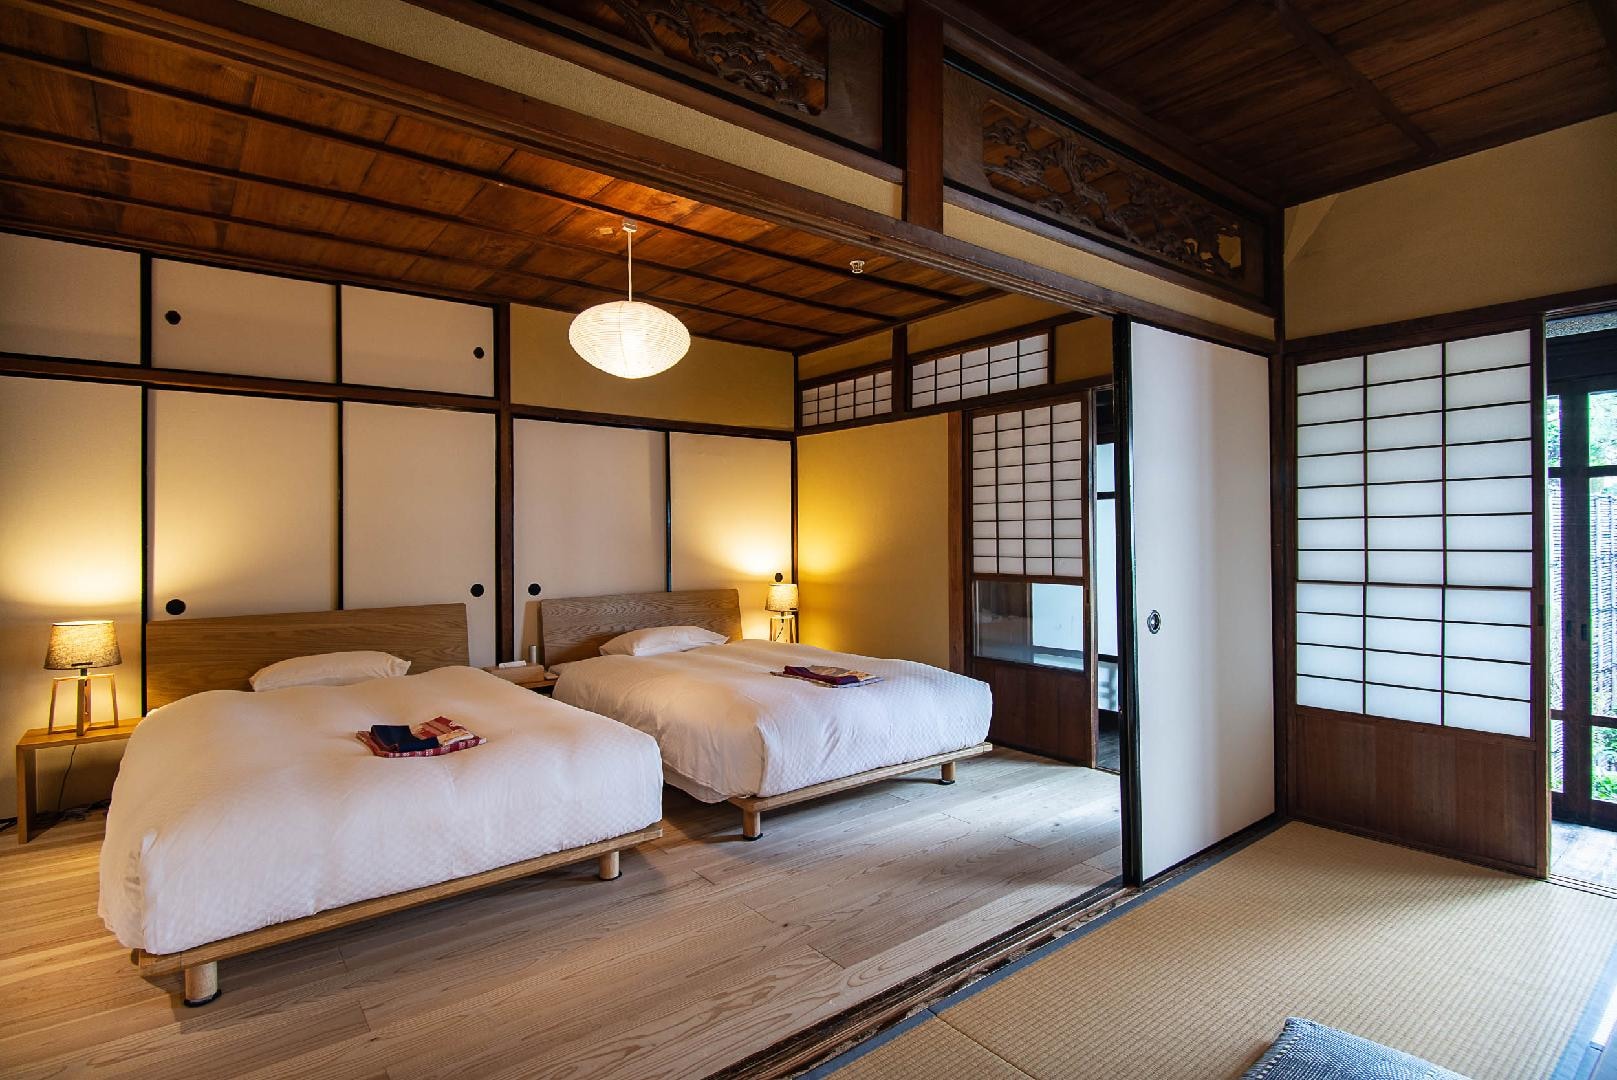 【VMG Premier】日式房間鋪著木地板的榻榻米房間。你可以從陽台上看到街道。